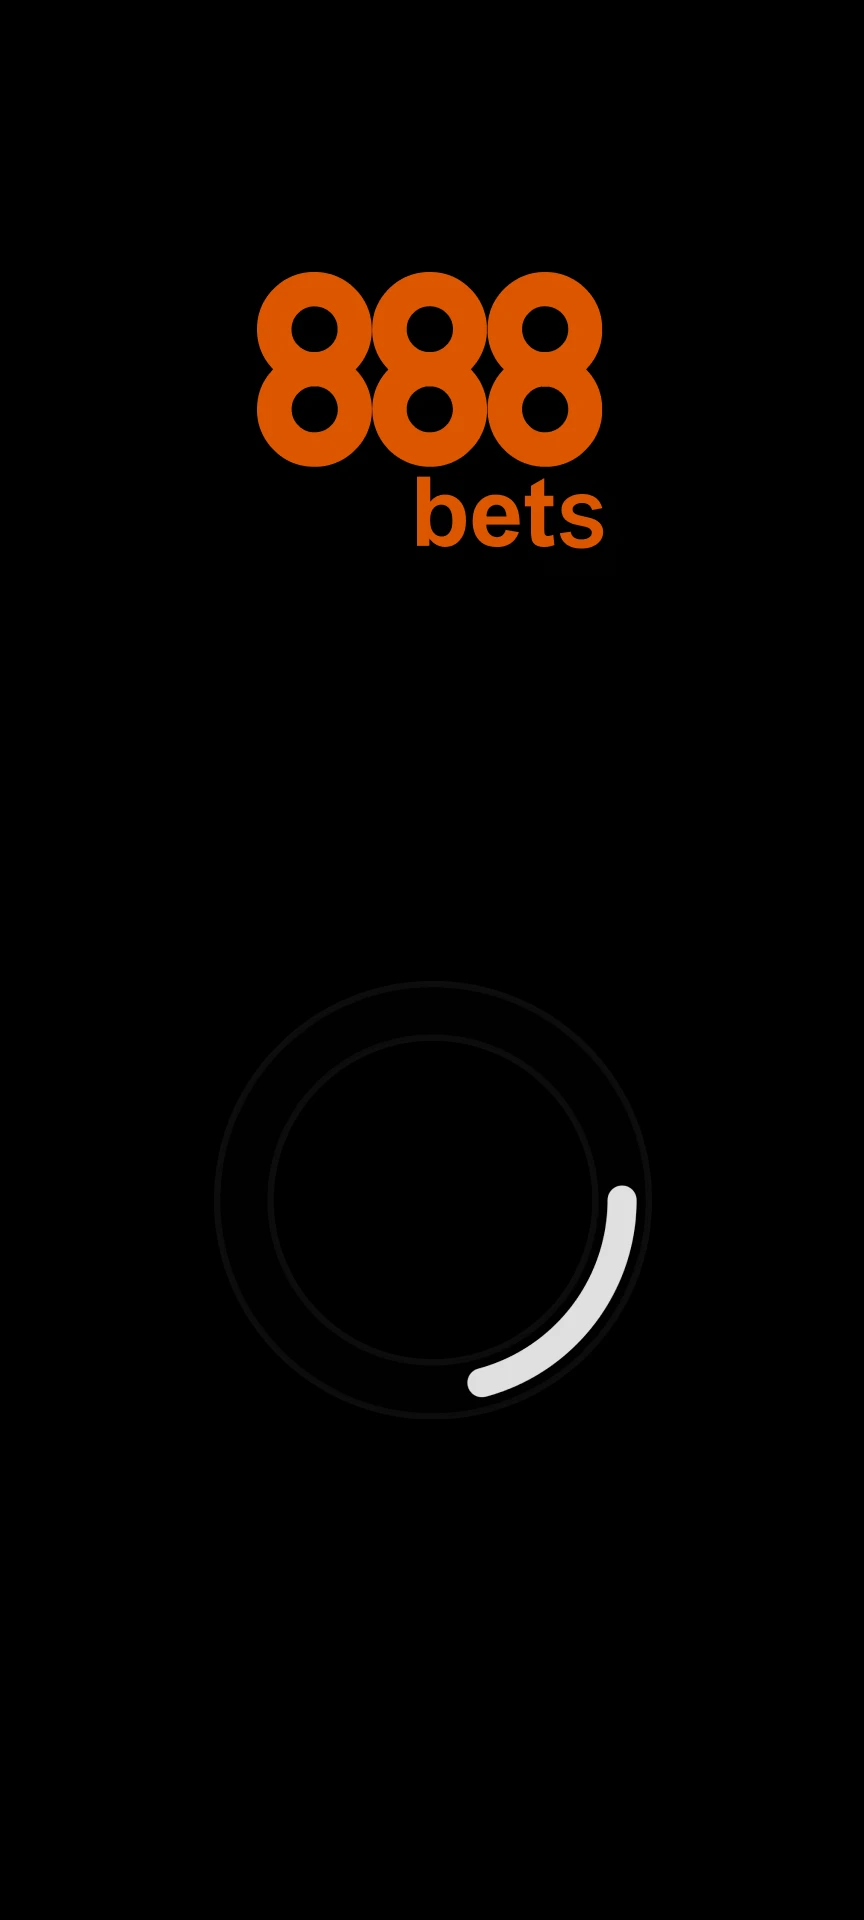 Baixe o aplicativo 888bet para Android.